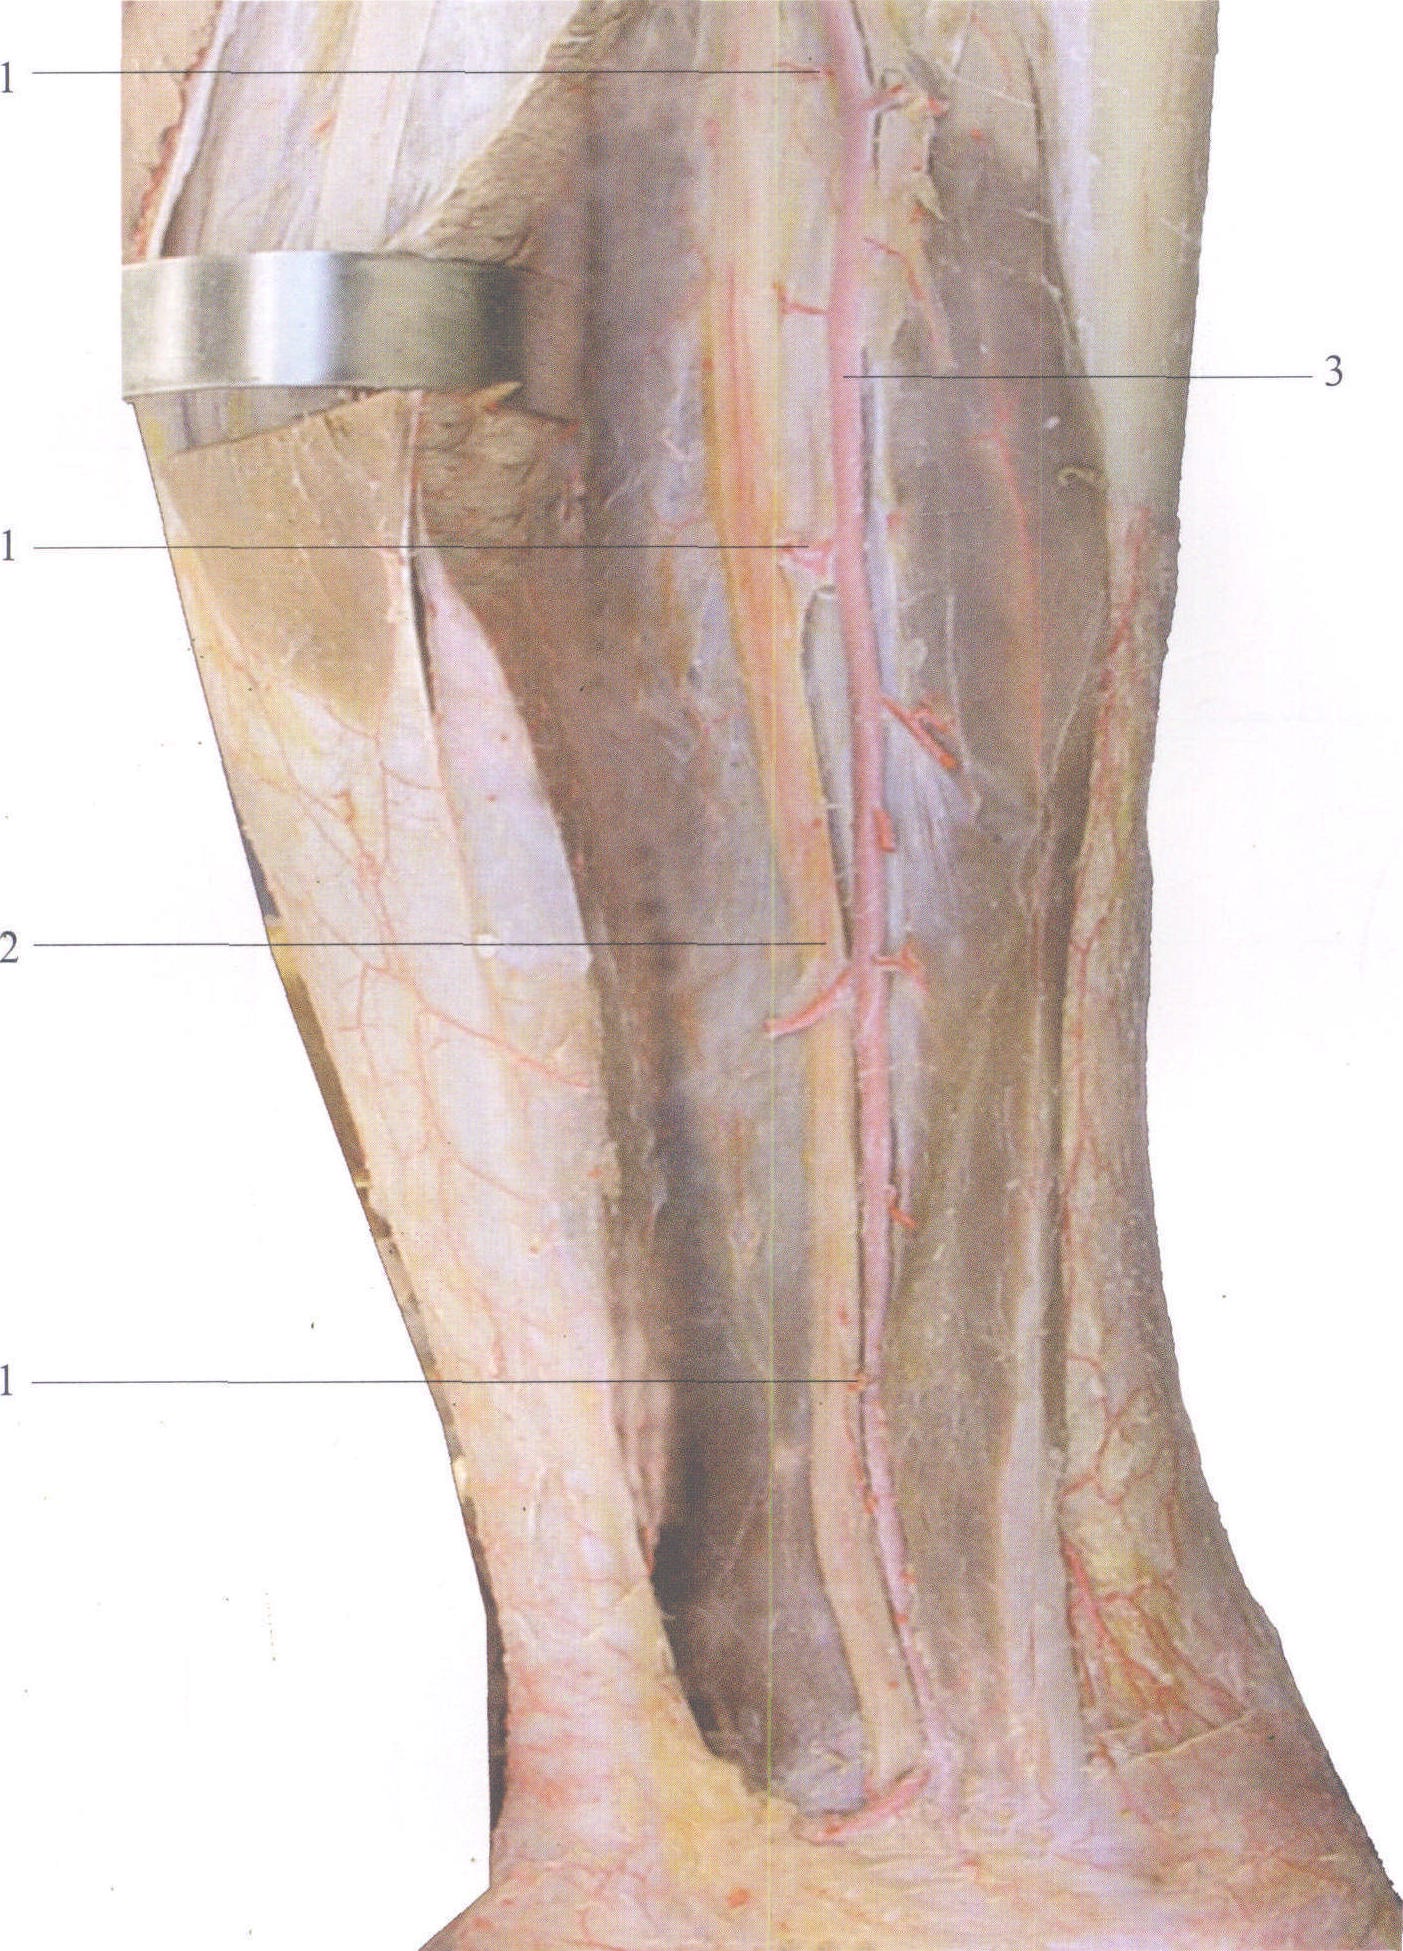 2胫神经tibialn3胫后动脉posteriortibiala